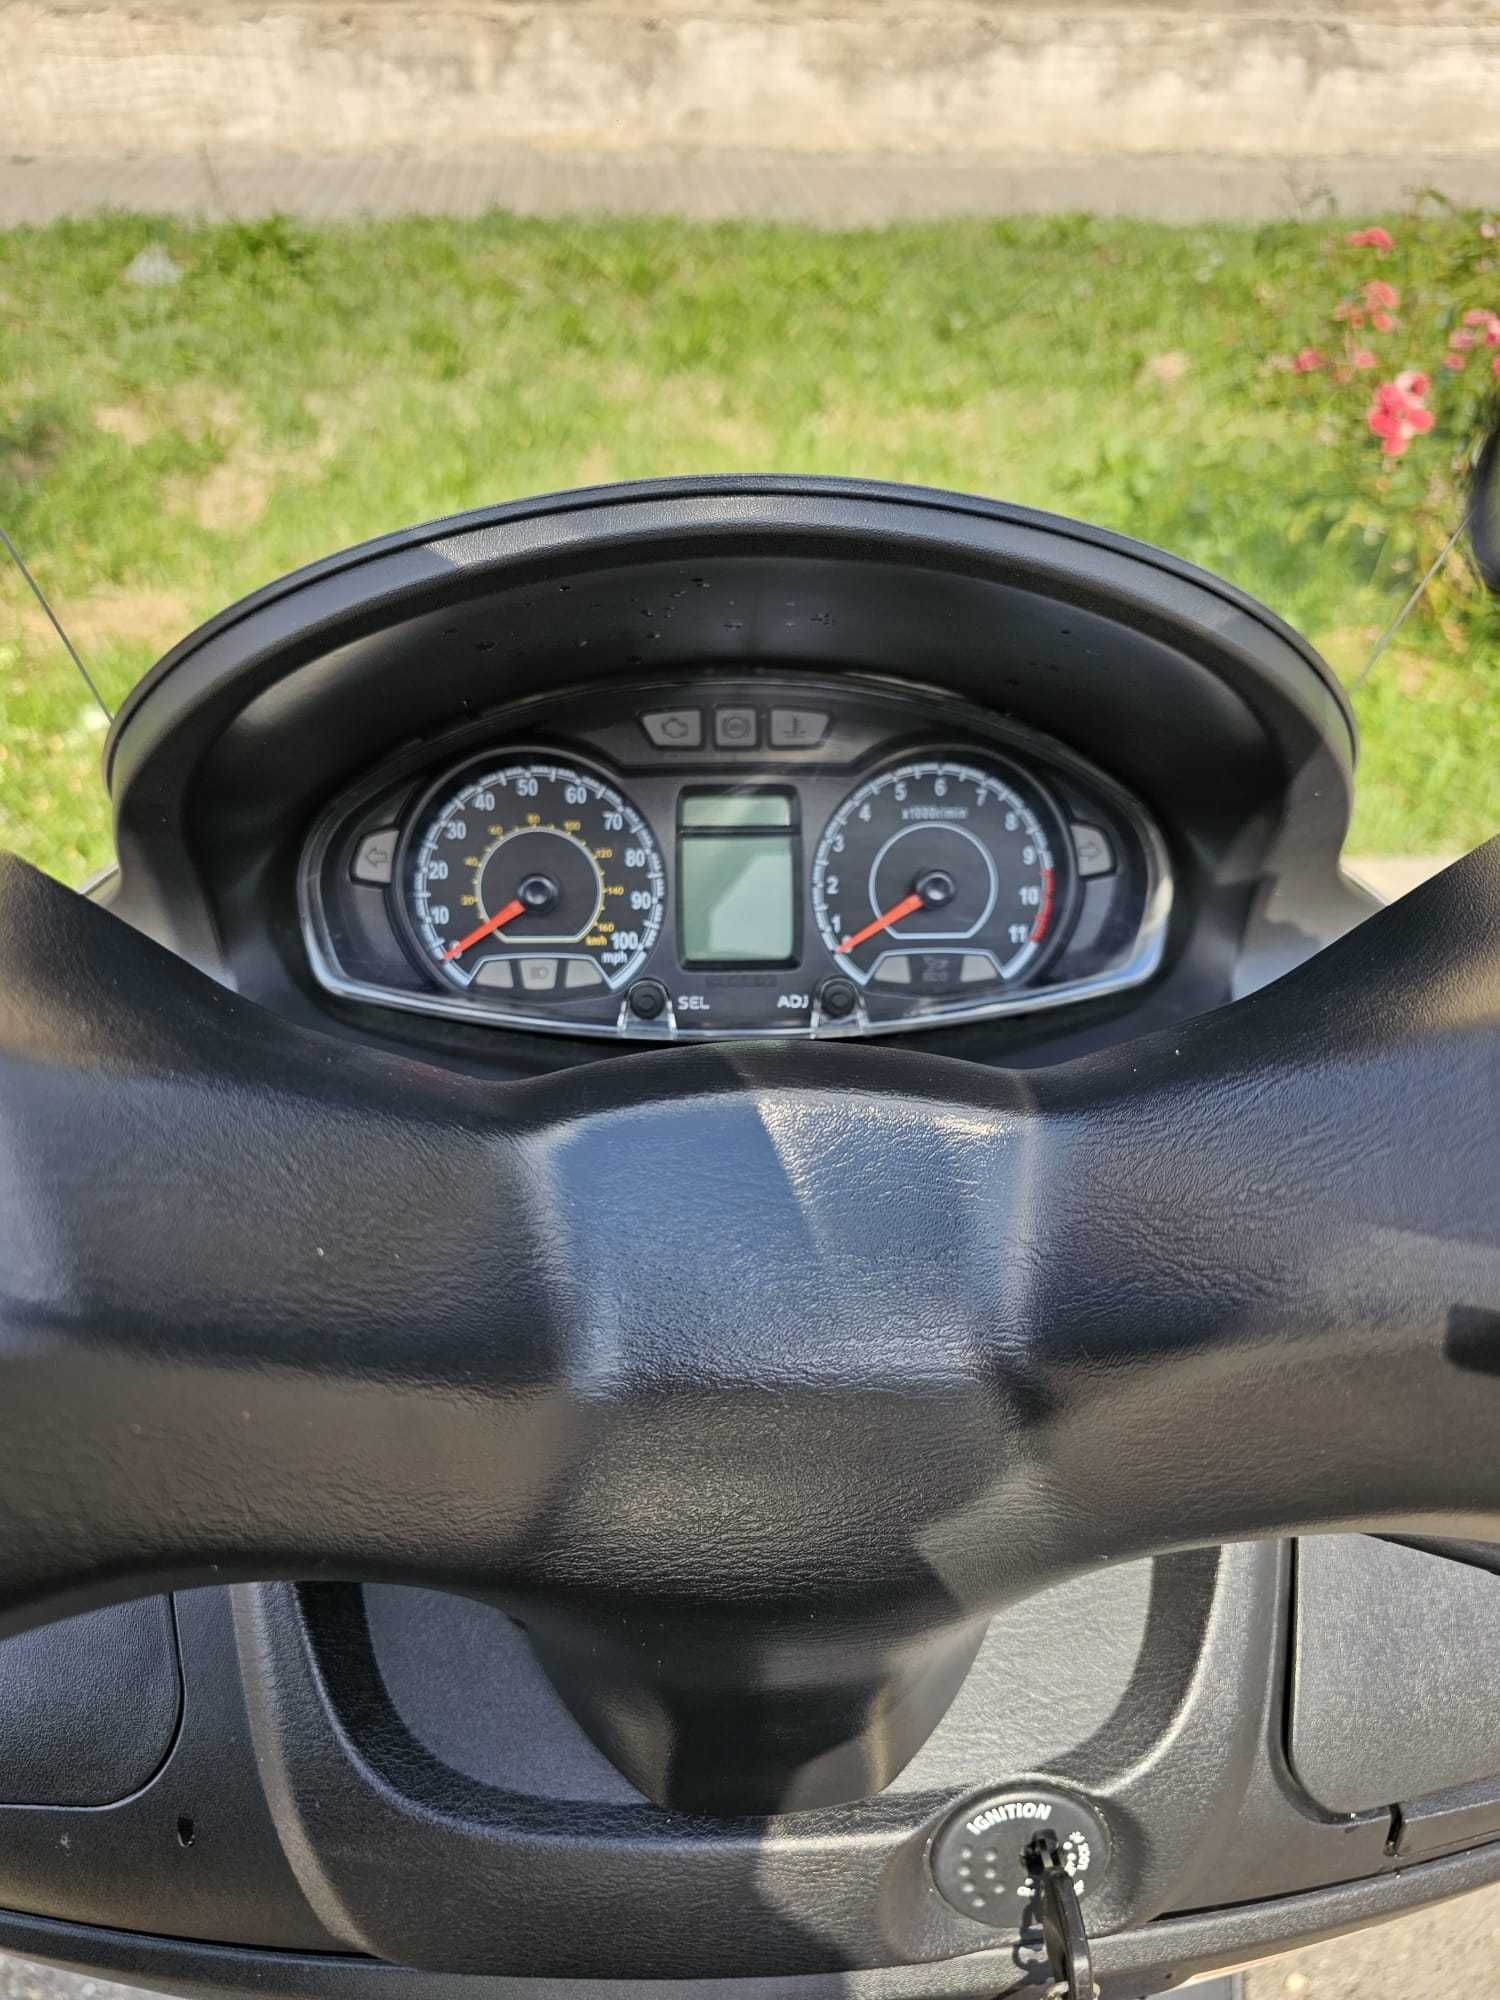 Scuter Suzuki Burgman 200cc